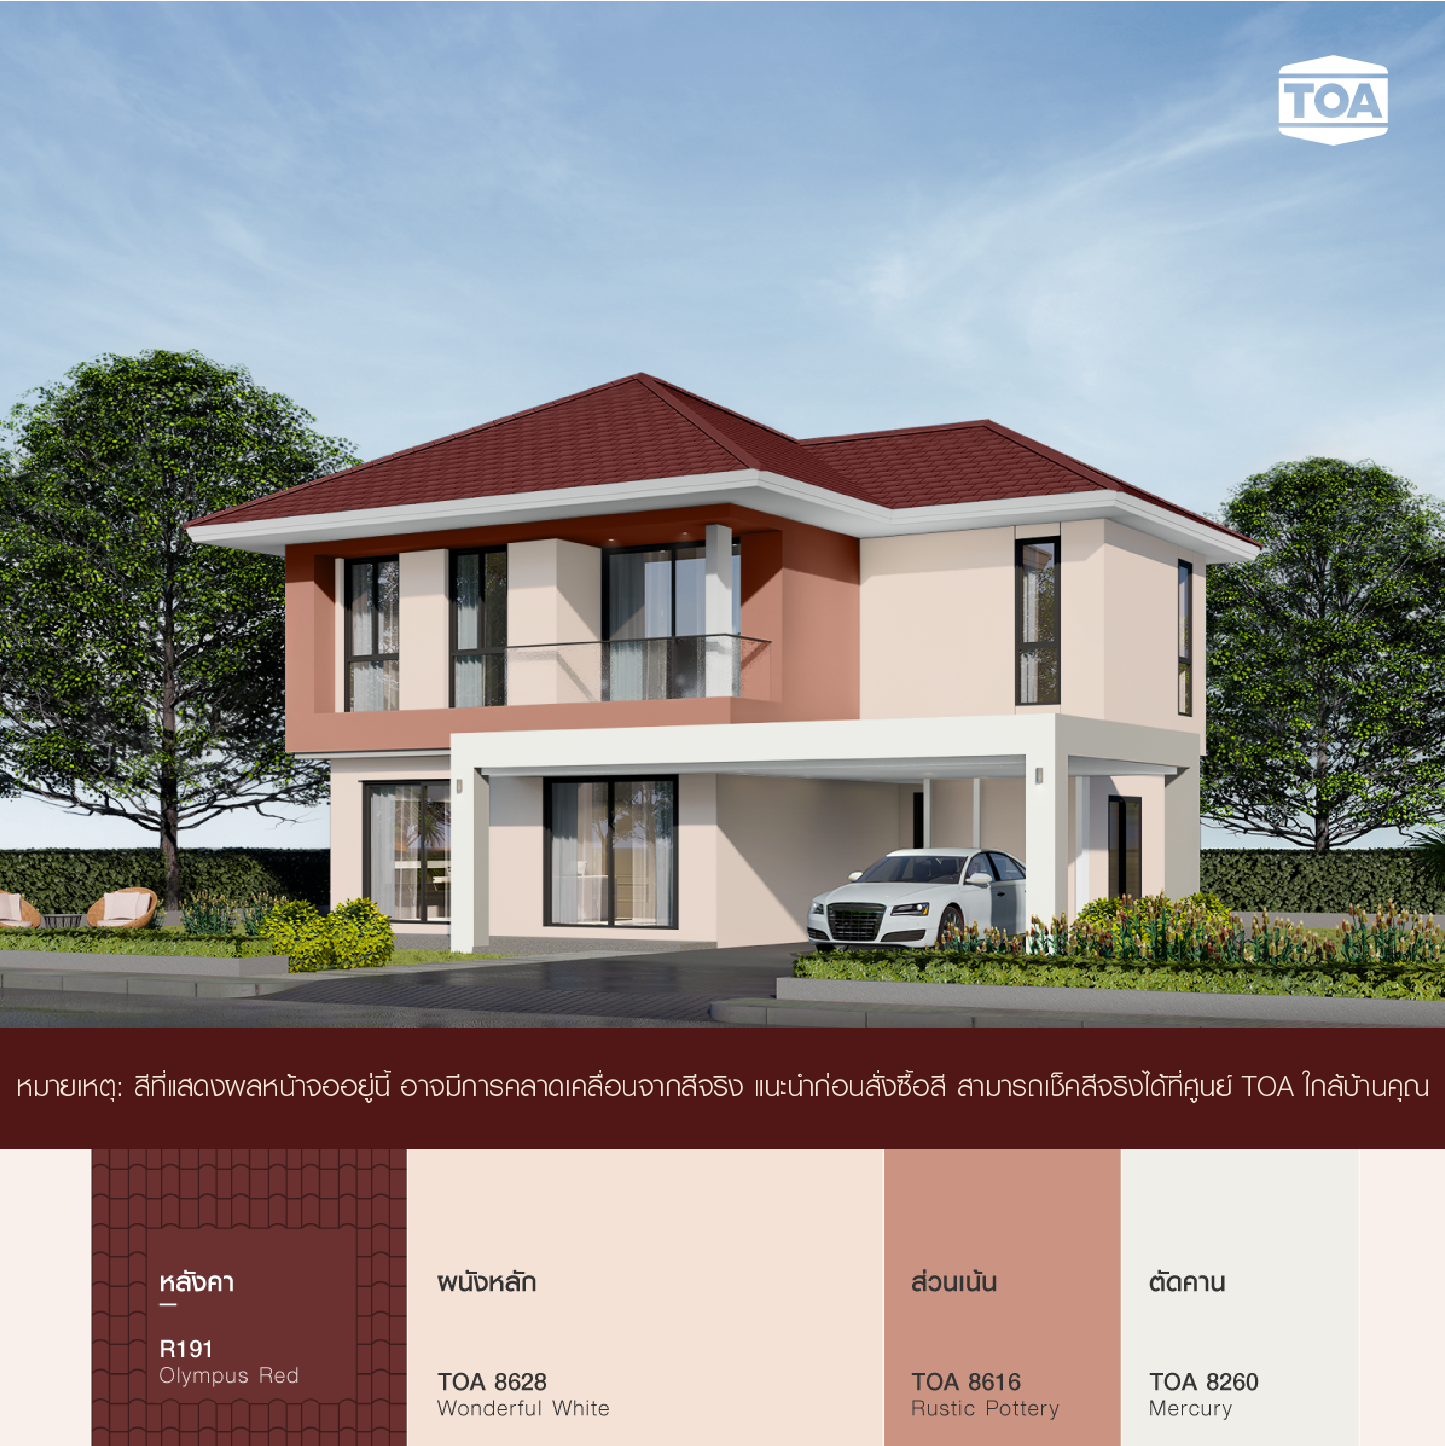 บ้าน 2 ชั้น สไตล์โมเดิร์น หลังคา สี แดง ทาสีตัว บ้าน สีโอรส TOA 8628 ก็สวย ดี